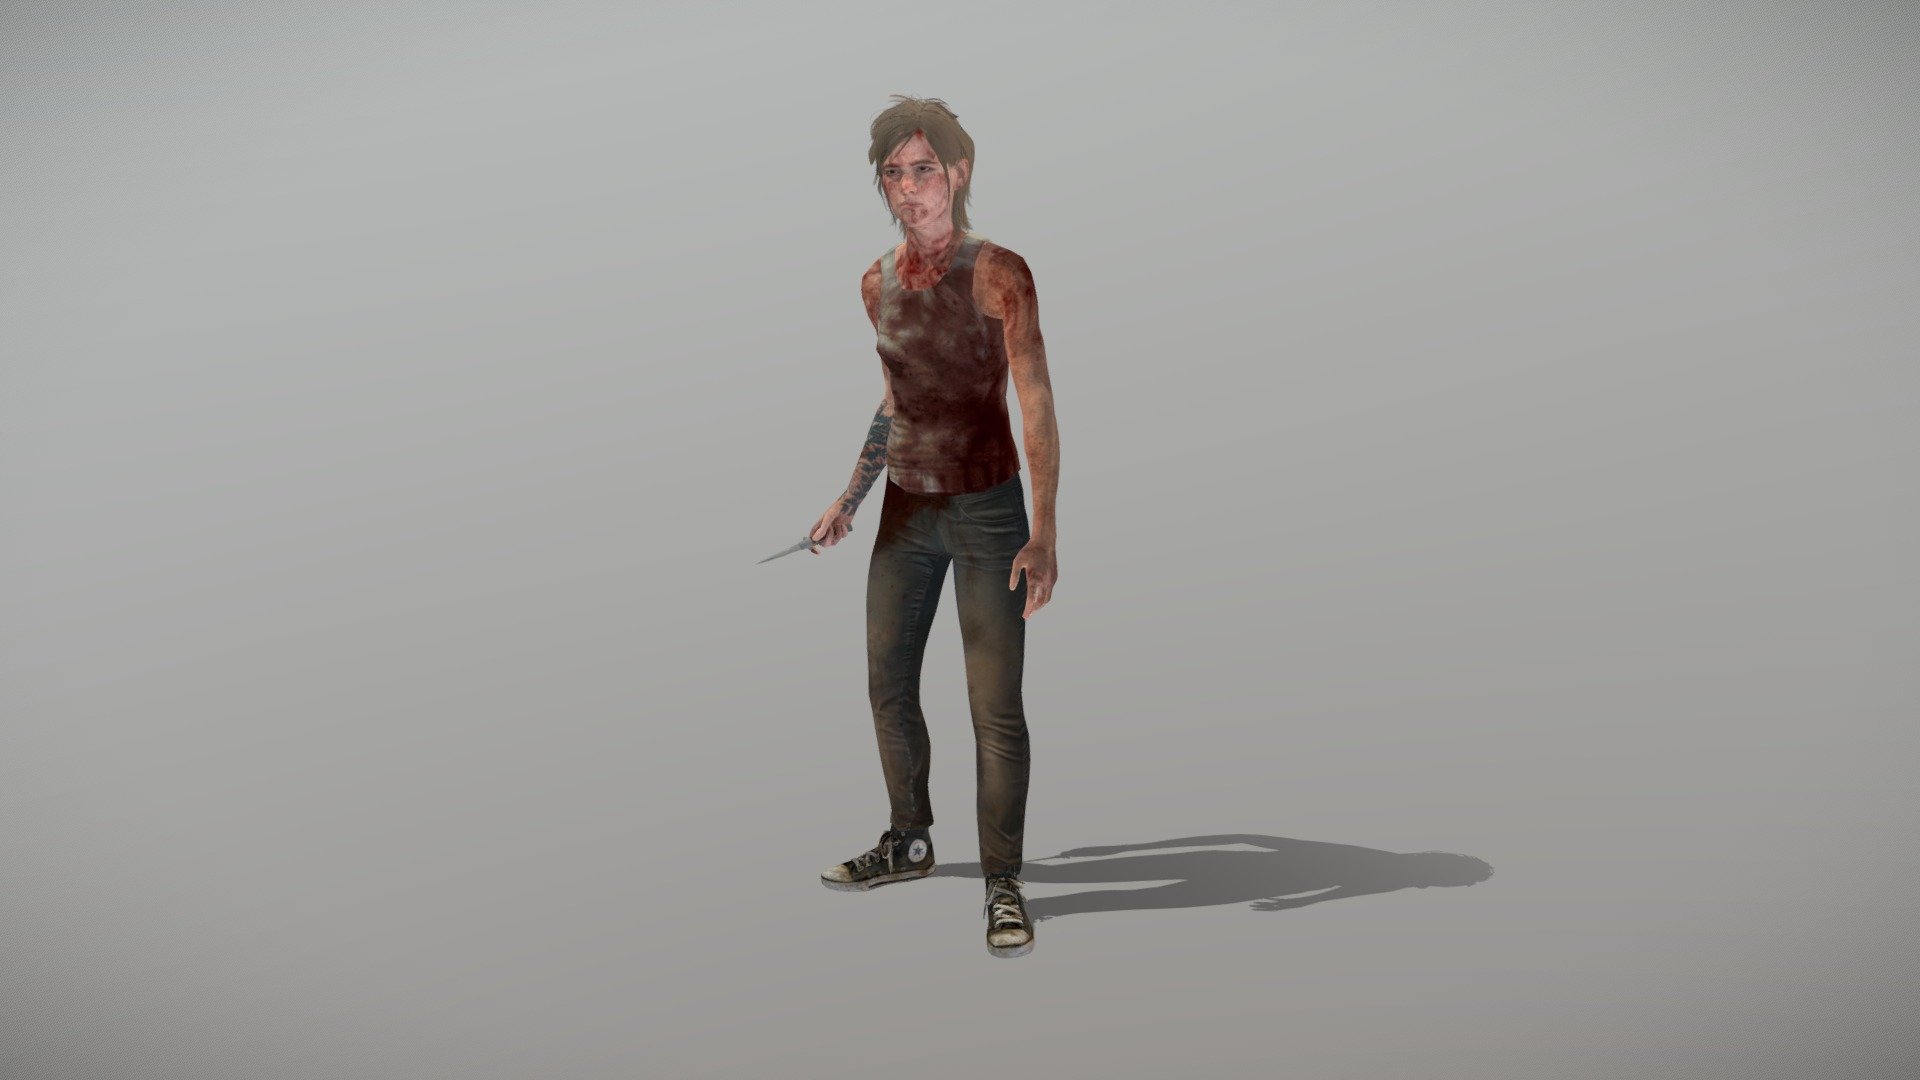 Ellie - The Last Of Us - 3D model by eloyms (@eloyms) [7aea295]